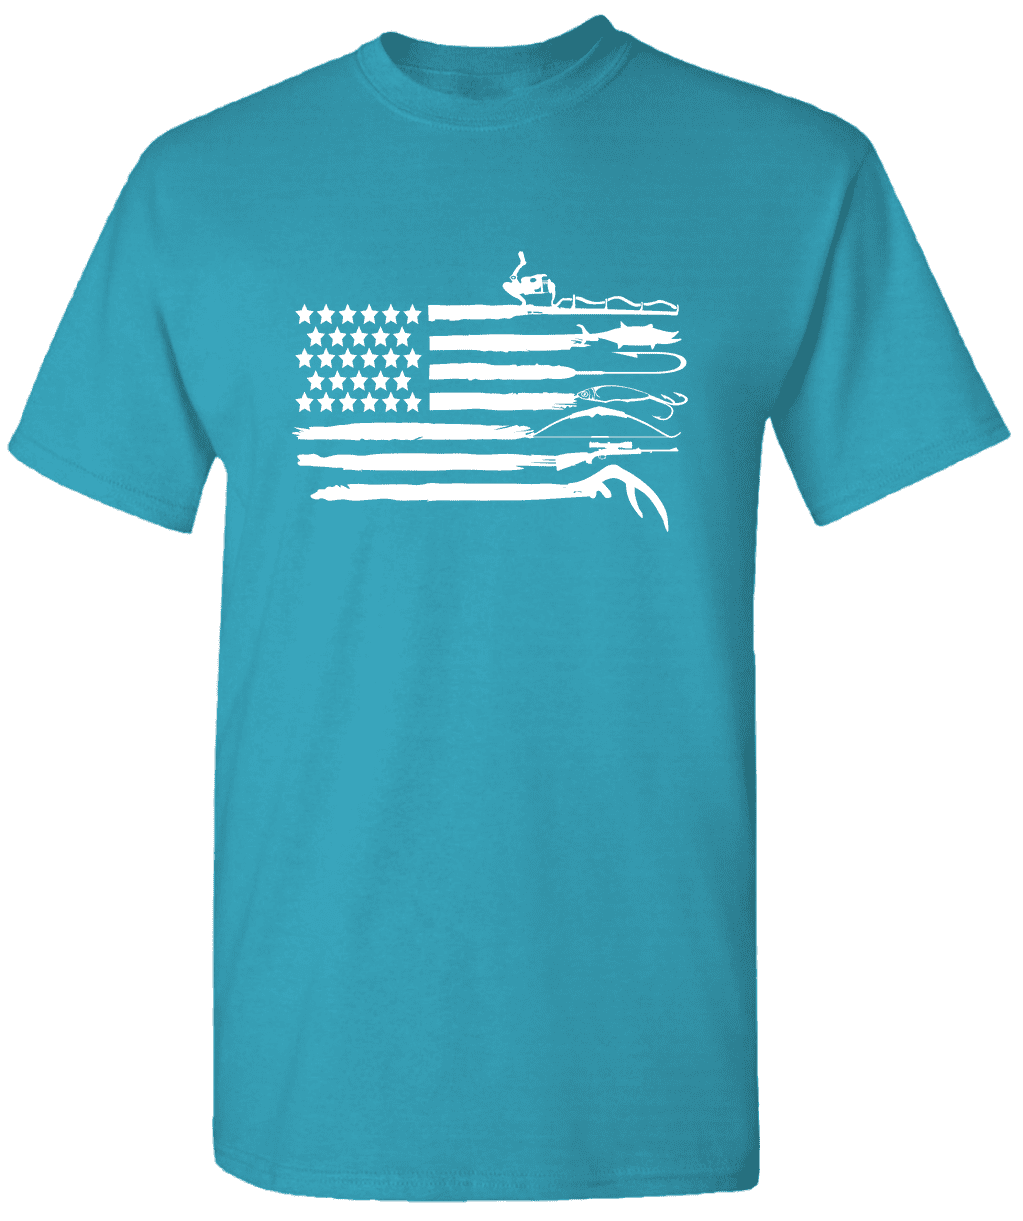 American Flag Fishing Pole T-Shirt - American Flag Shirt Fishing T-Shirt 